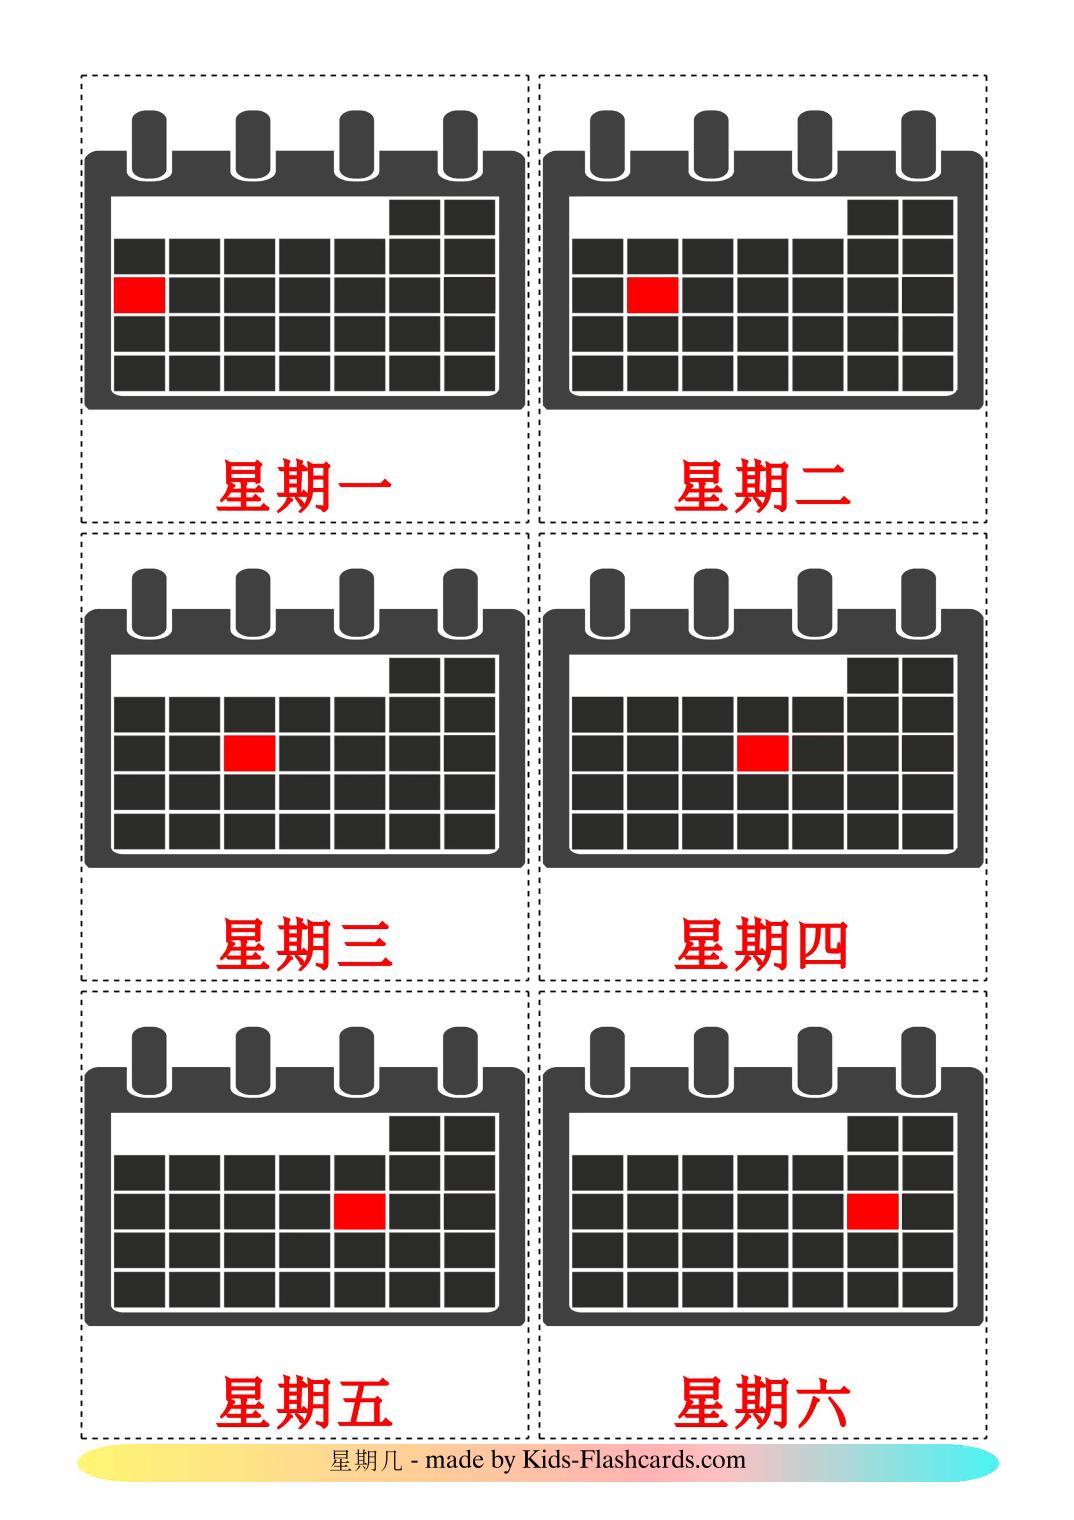 Dagen van de week - 12 gratis printbare chinees(vereenvoudigd)e kaarten